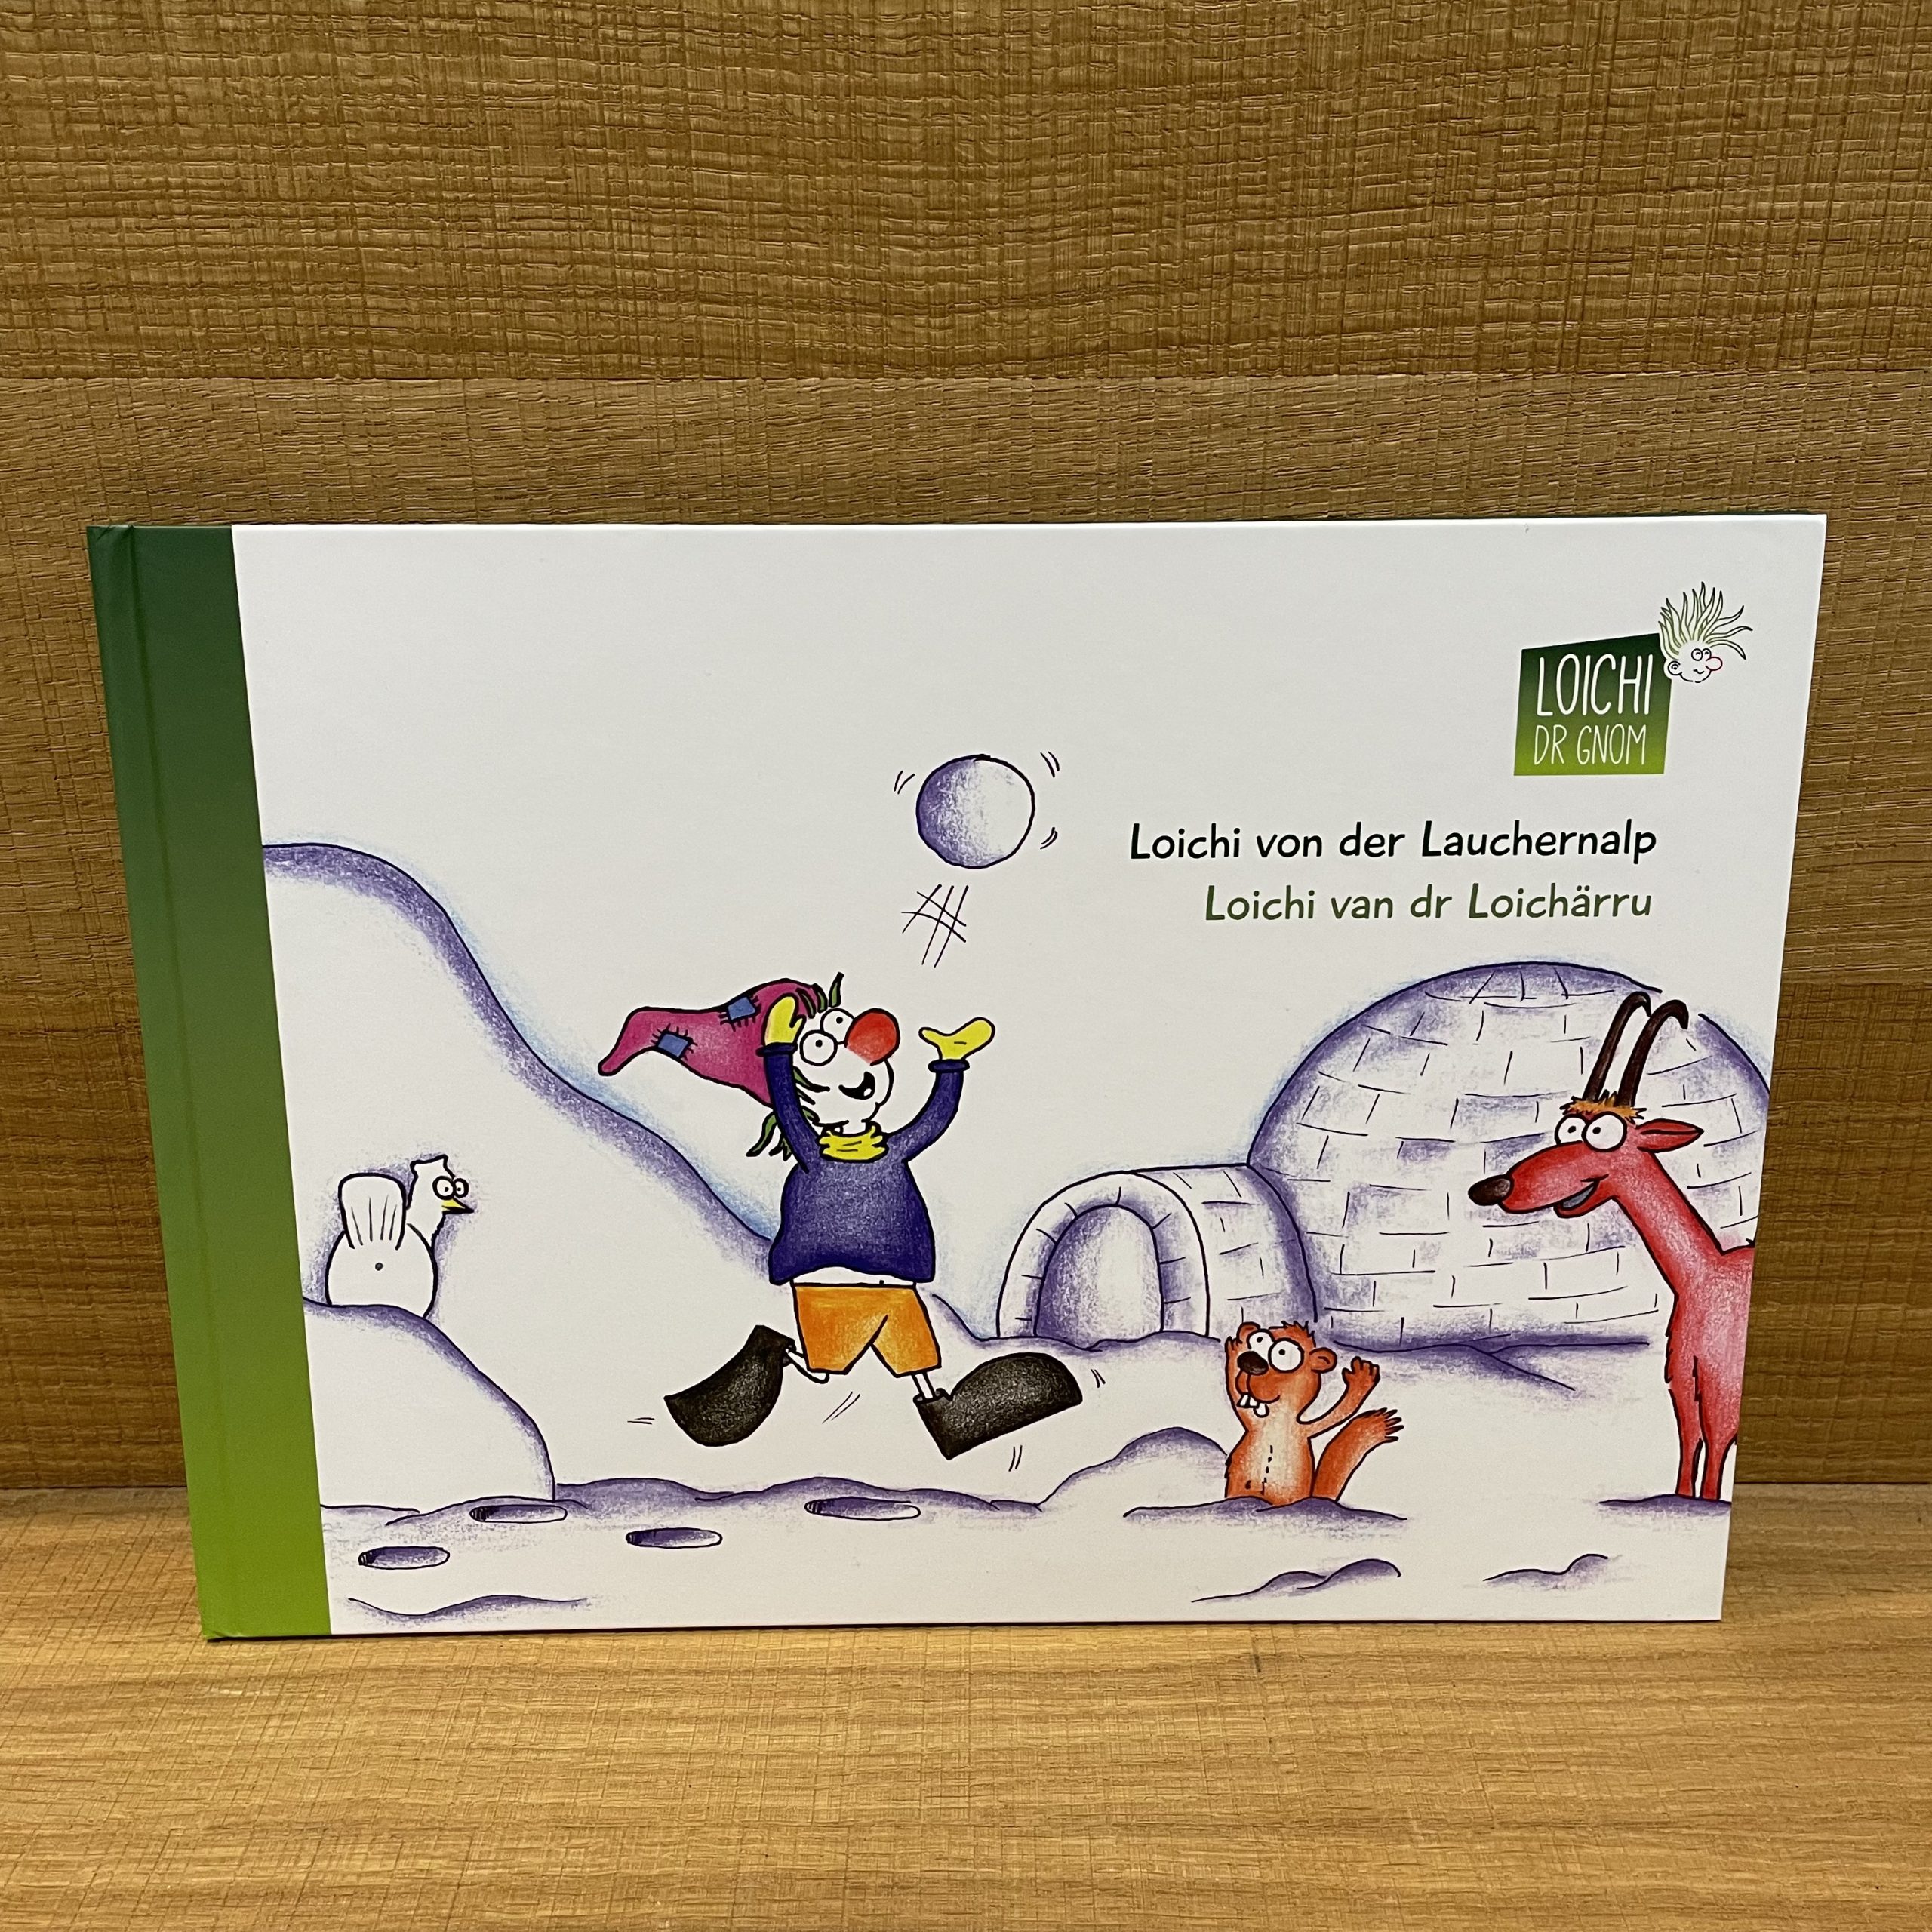 / Forum Nature der «Loichi dr Lauchernalp Kinderbuch World | (Deutsch/Walliserdeutsch)» Loichärru van Loichi von